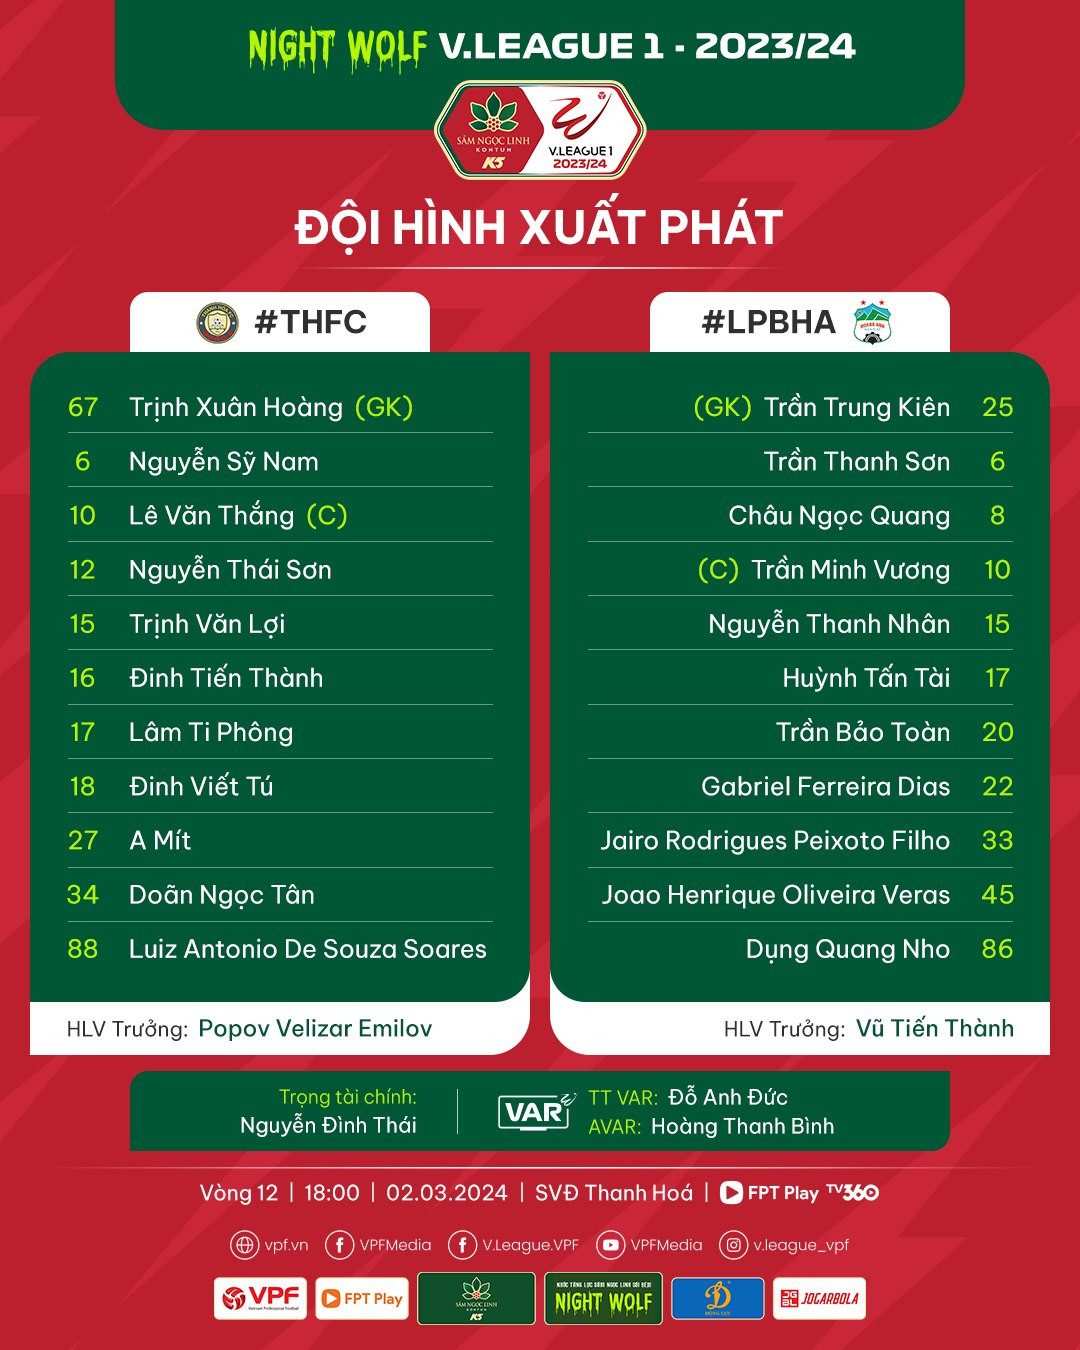 View - Kết quả bóng đá Thanh Hóa 1-2 Hoàng Anh Gia Lai - Vòng 12 V league 2023/24